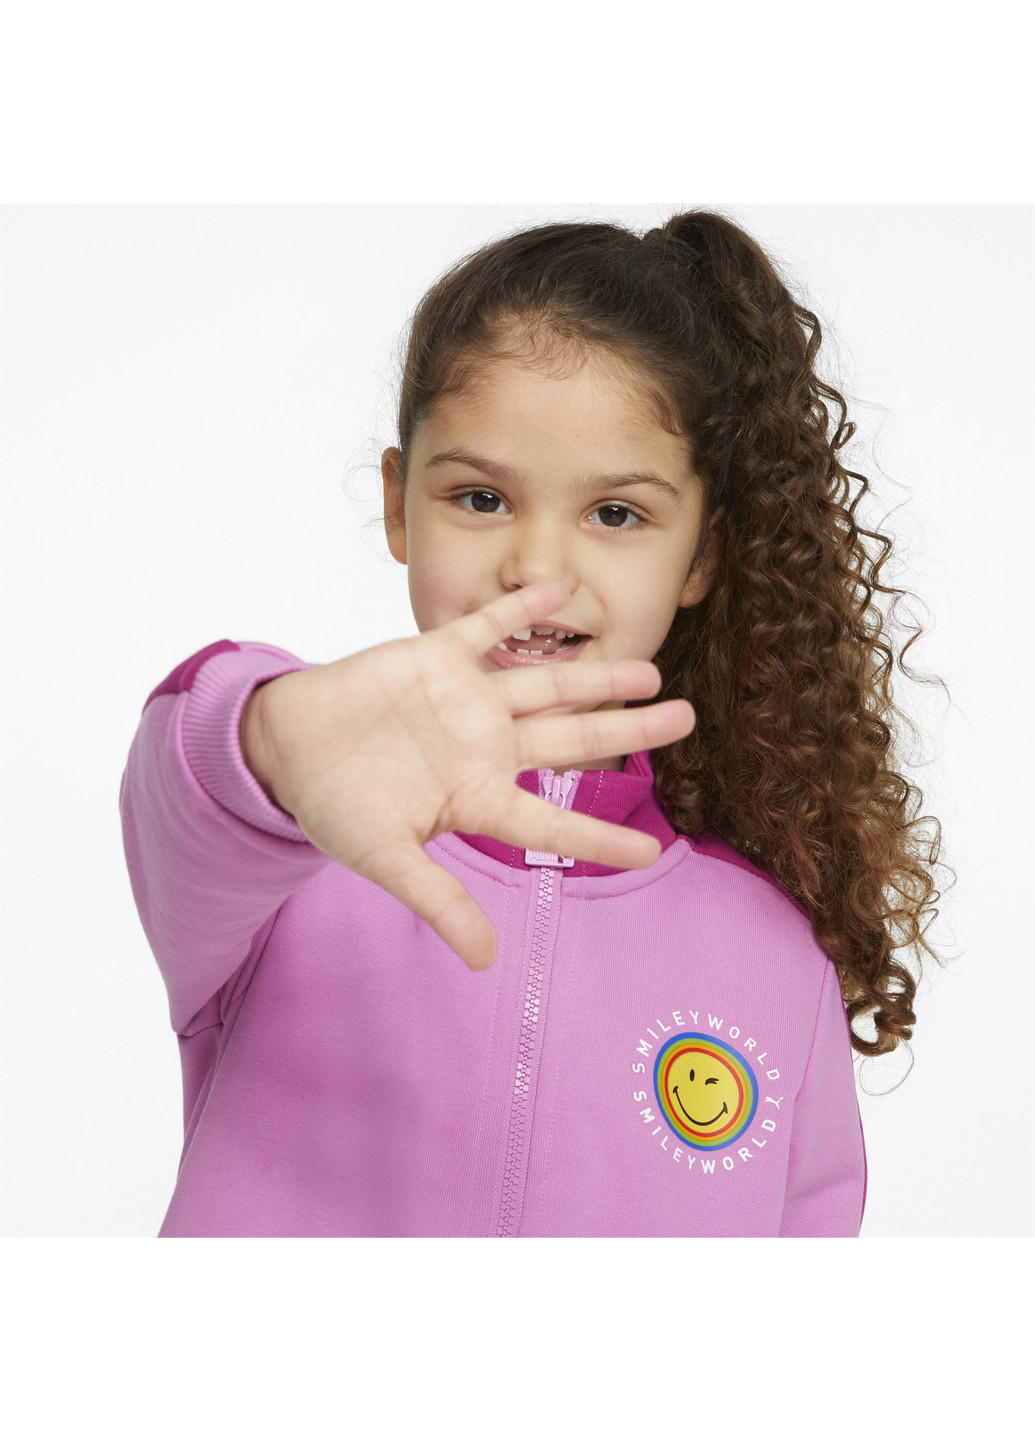 Розовая демисезонная детская олимпийка x smileyworld t7 kids' track jacket Puma